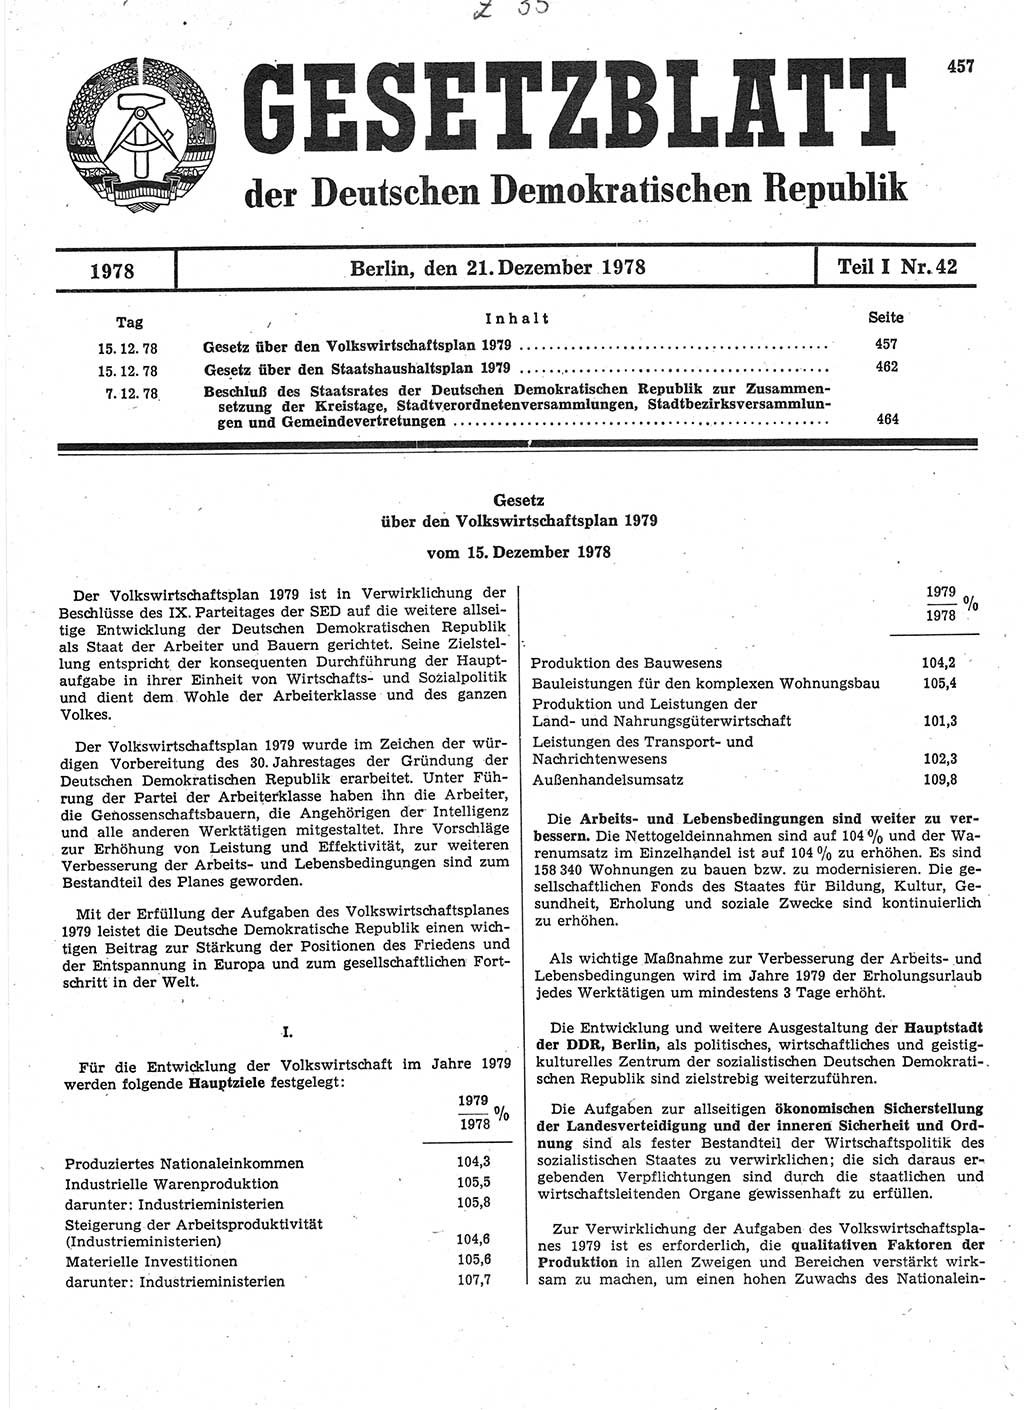 Gesetzblatt (GBl.) der Deutschen Demokratischen Republik (DDR) Teil Ⅰ 1978, Seite 457 (GBl. DDR Ⅰ 1978, S. 457)